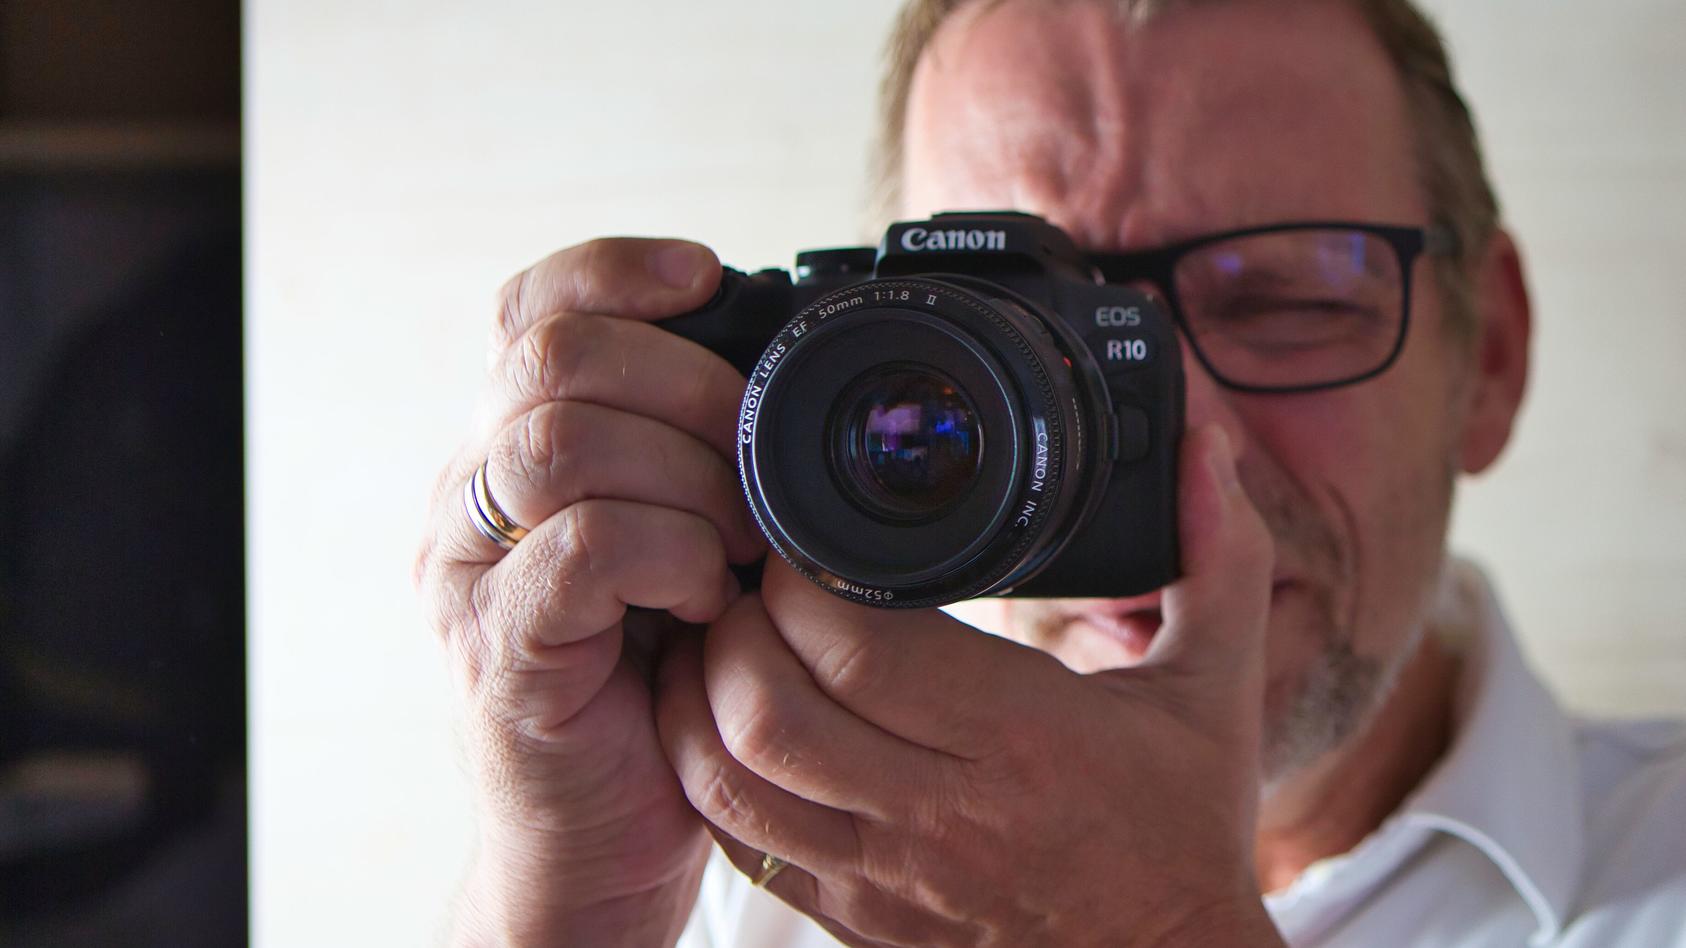 Die Canon EOS R10 im Alltagstest: Die kompakte Kamera liegt gut in der Hand